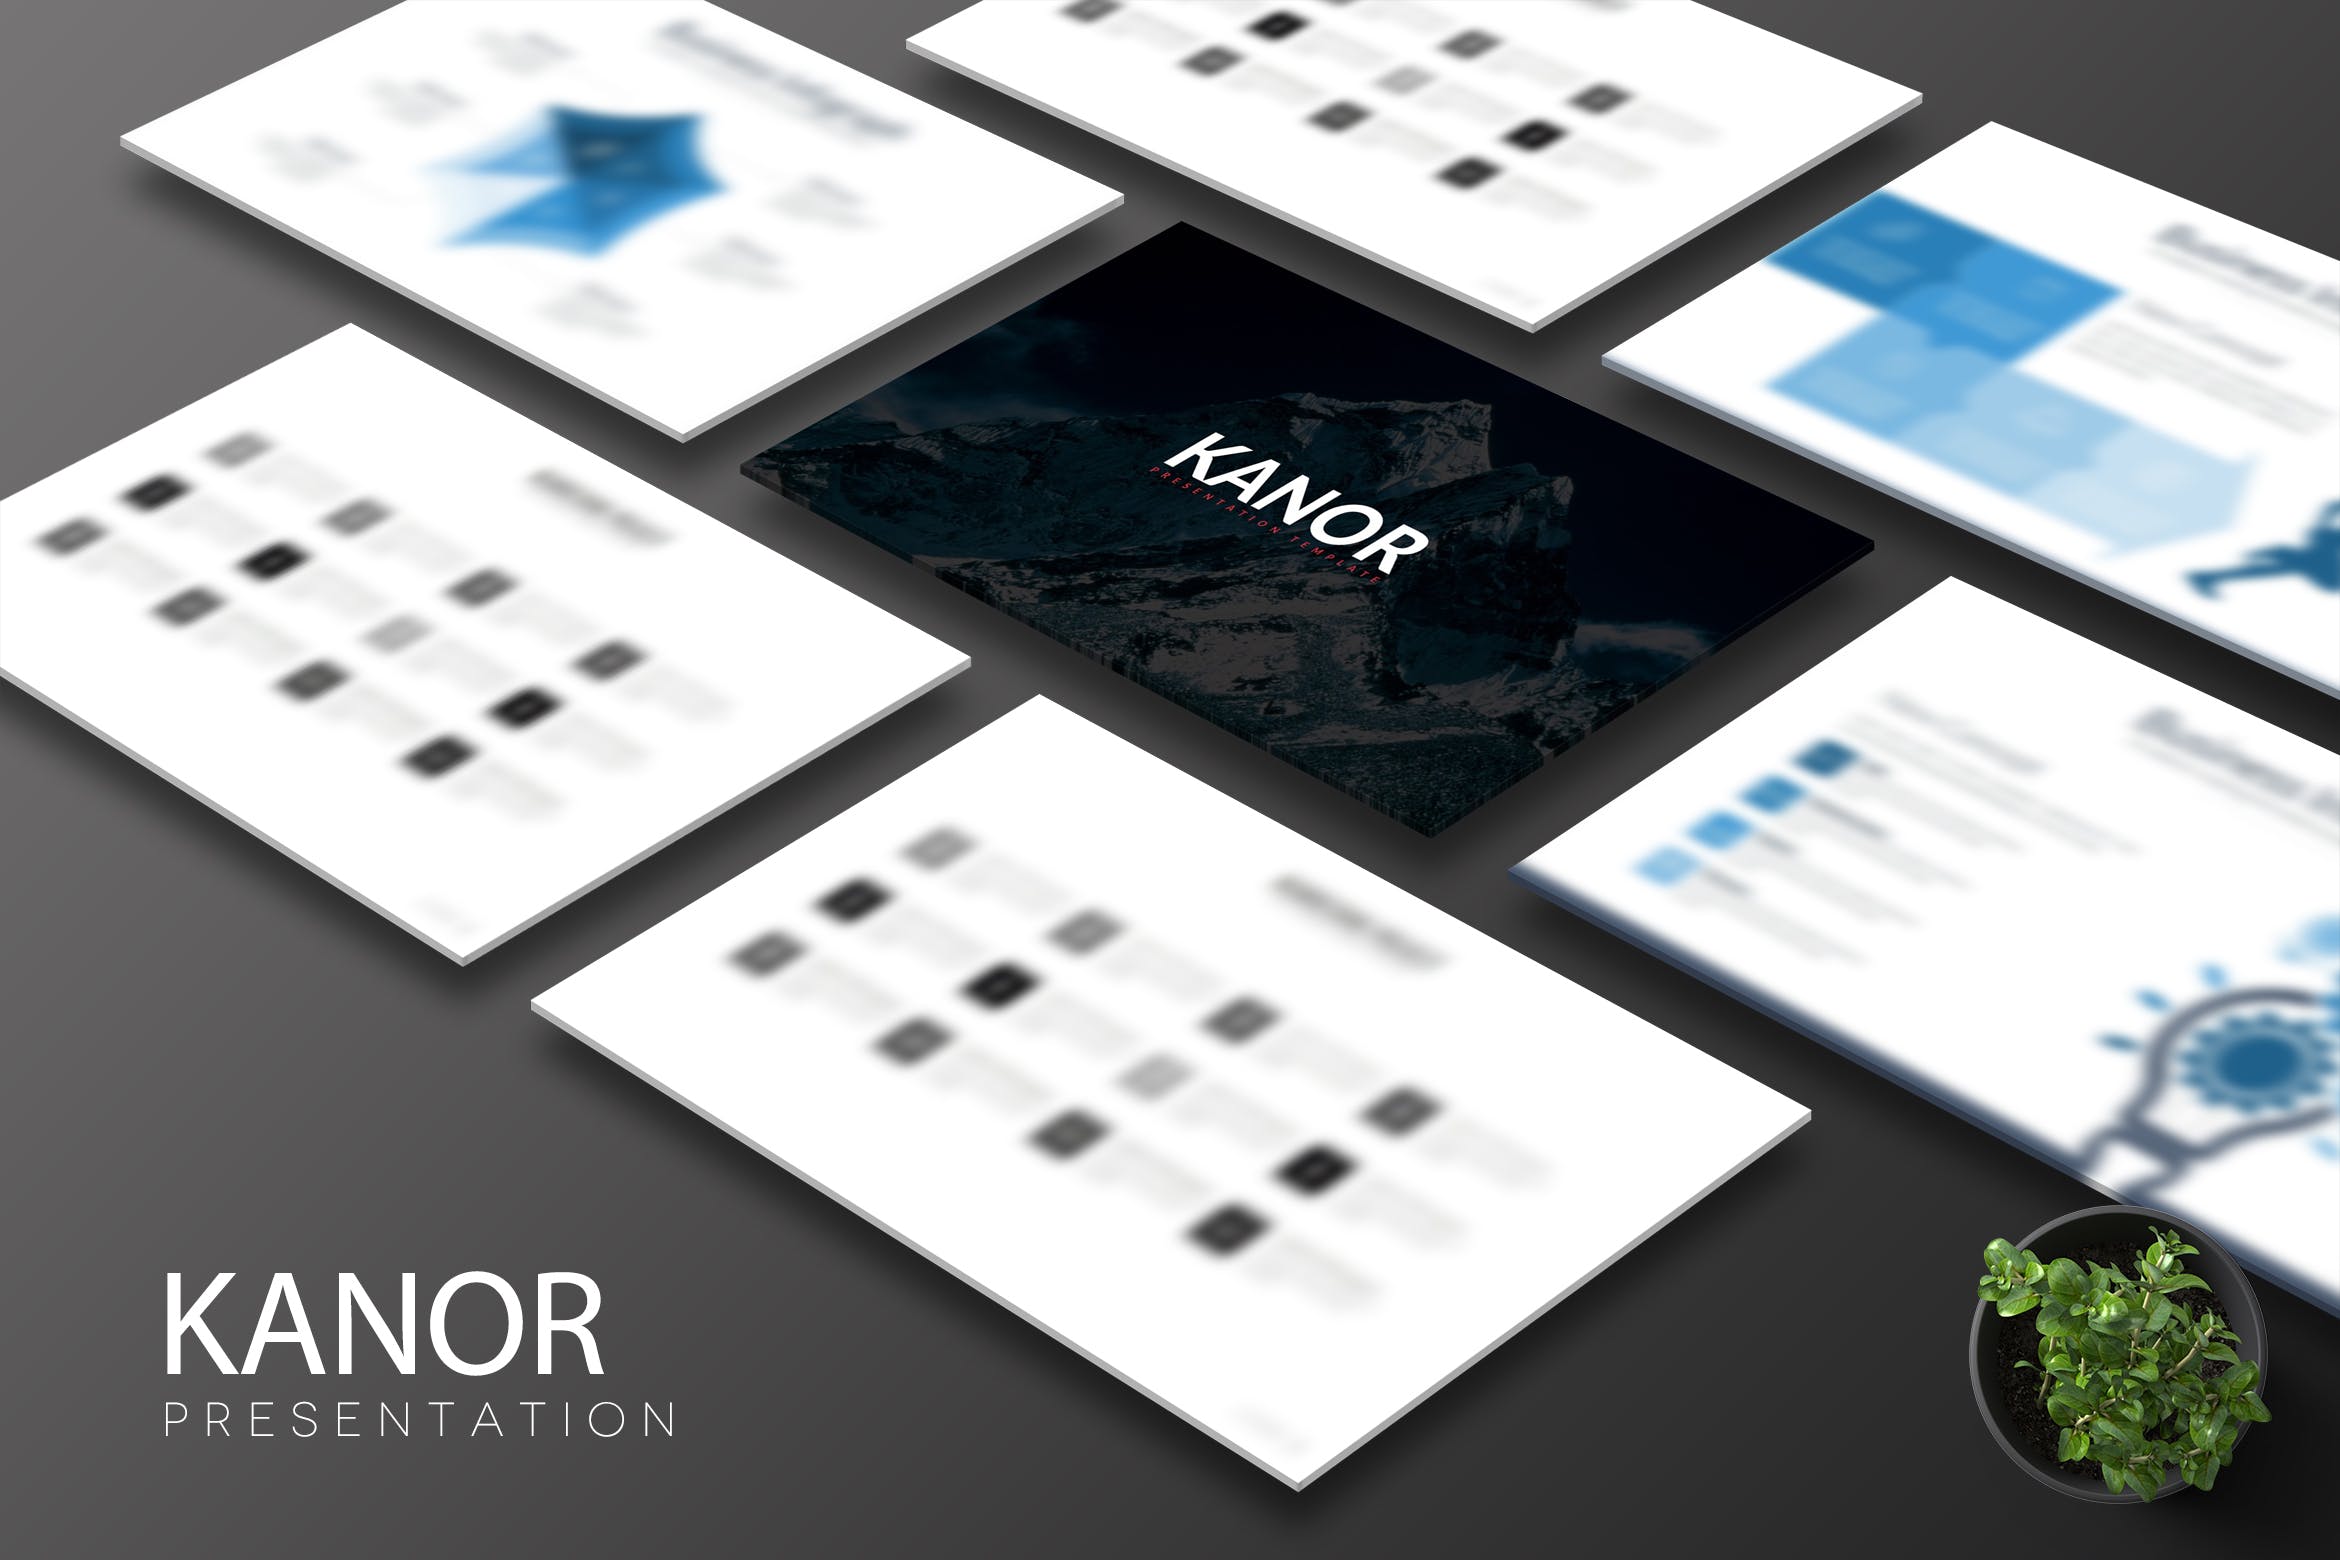 简约设计风格多用途企业素材库精选Keynote模板设计模板 Kanor – Keynote Template插图